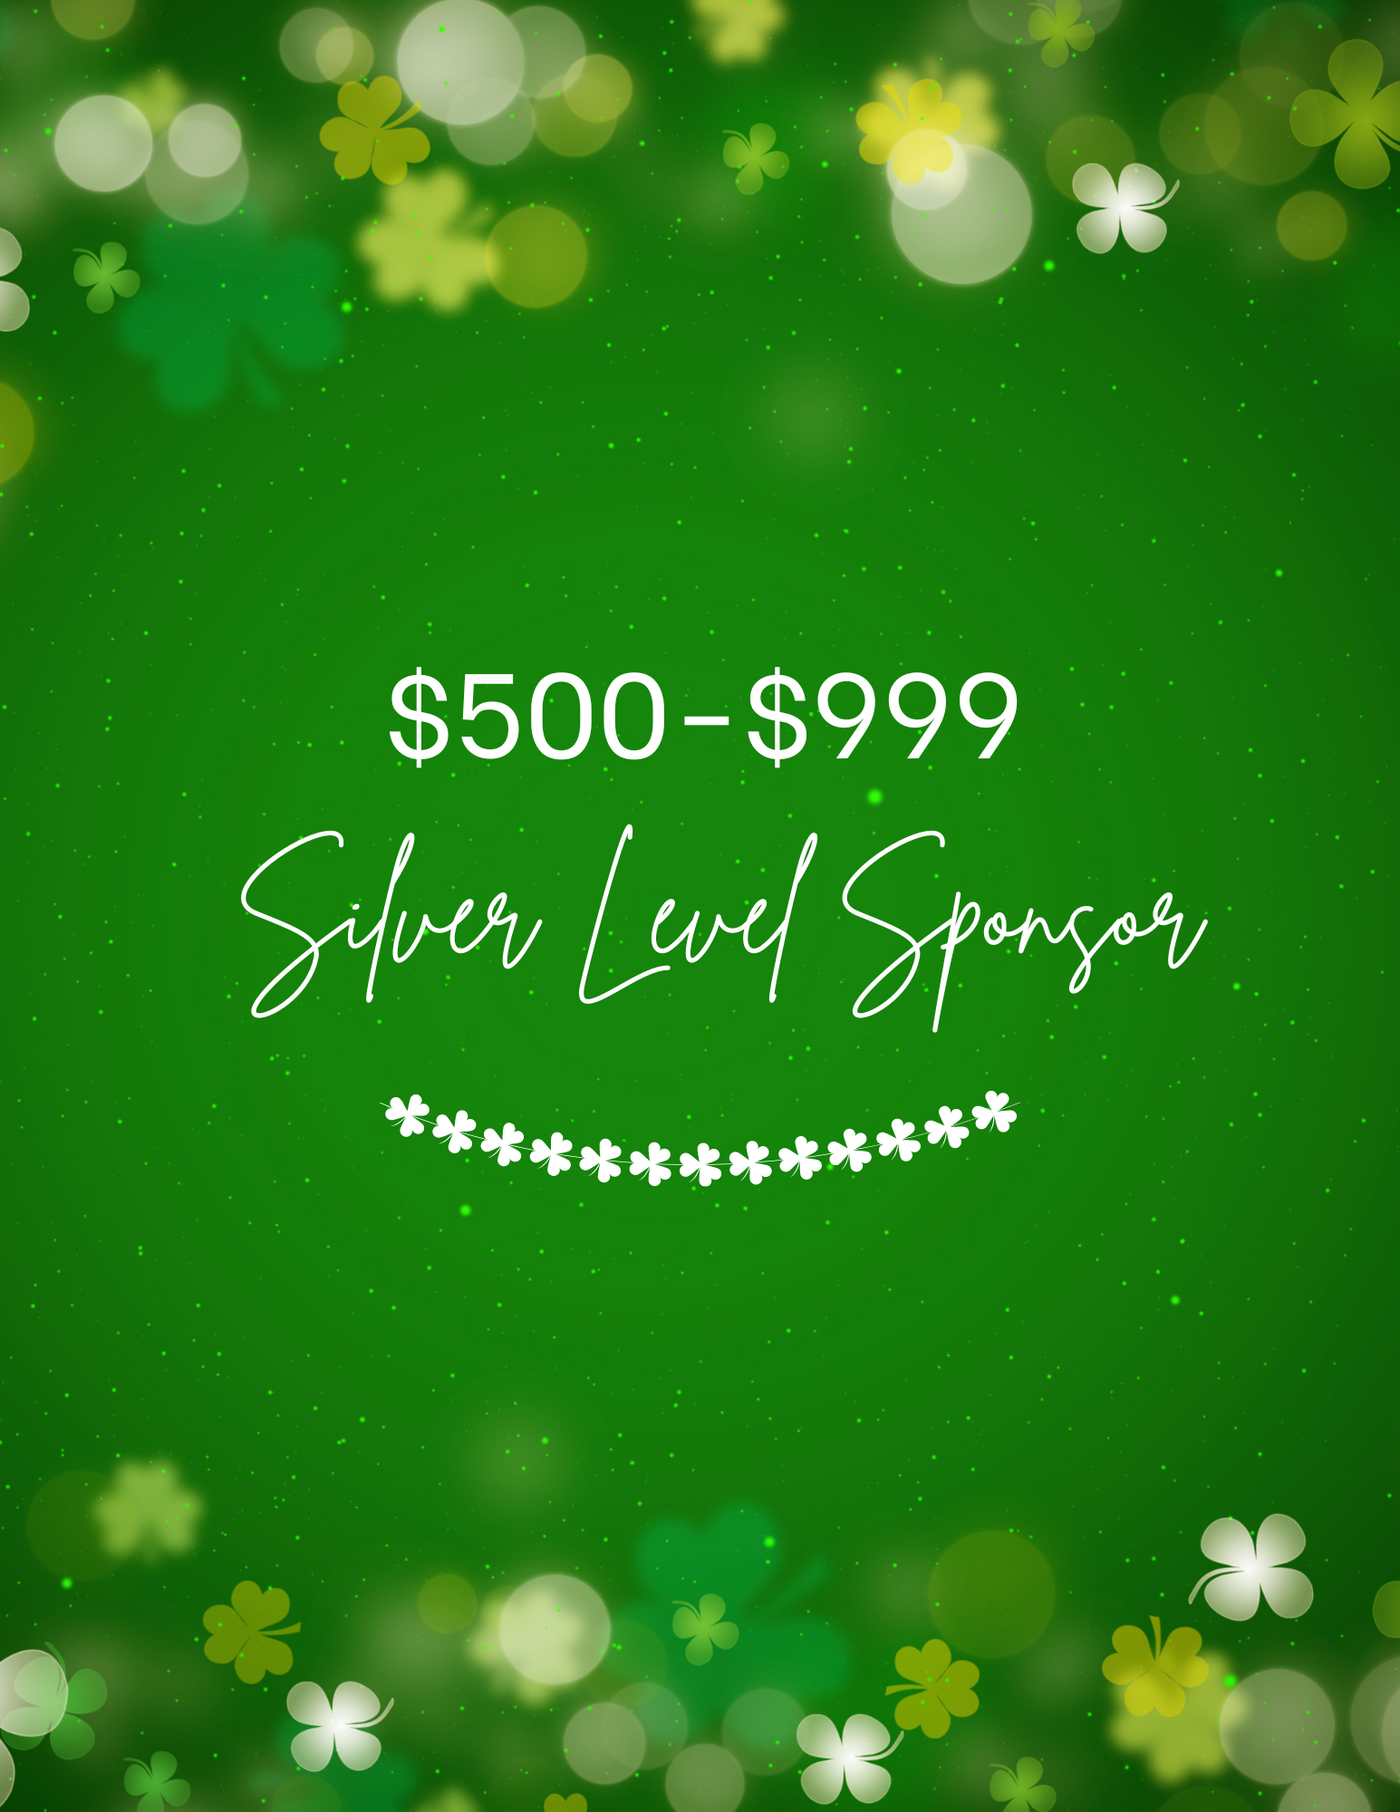 Shamrocks & Shenanigans + Lucky Shamrock Silver Sponsor $500. - $999.